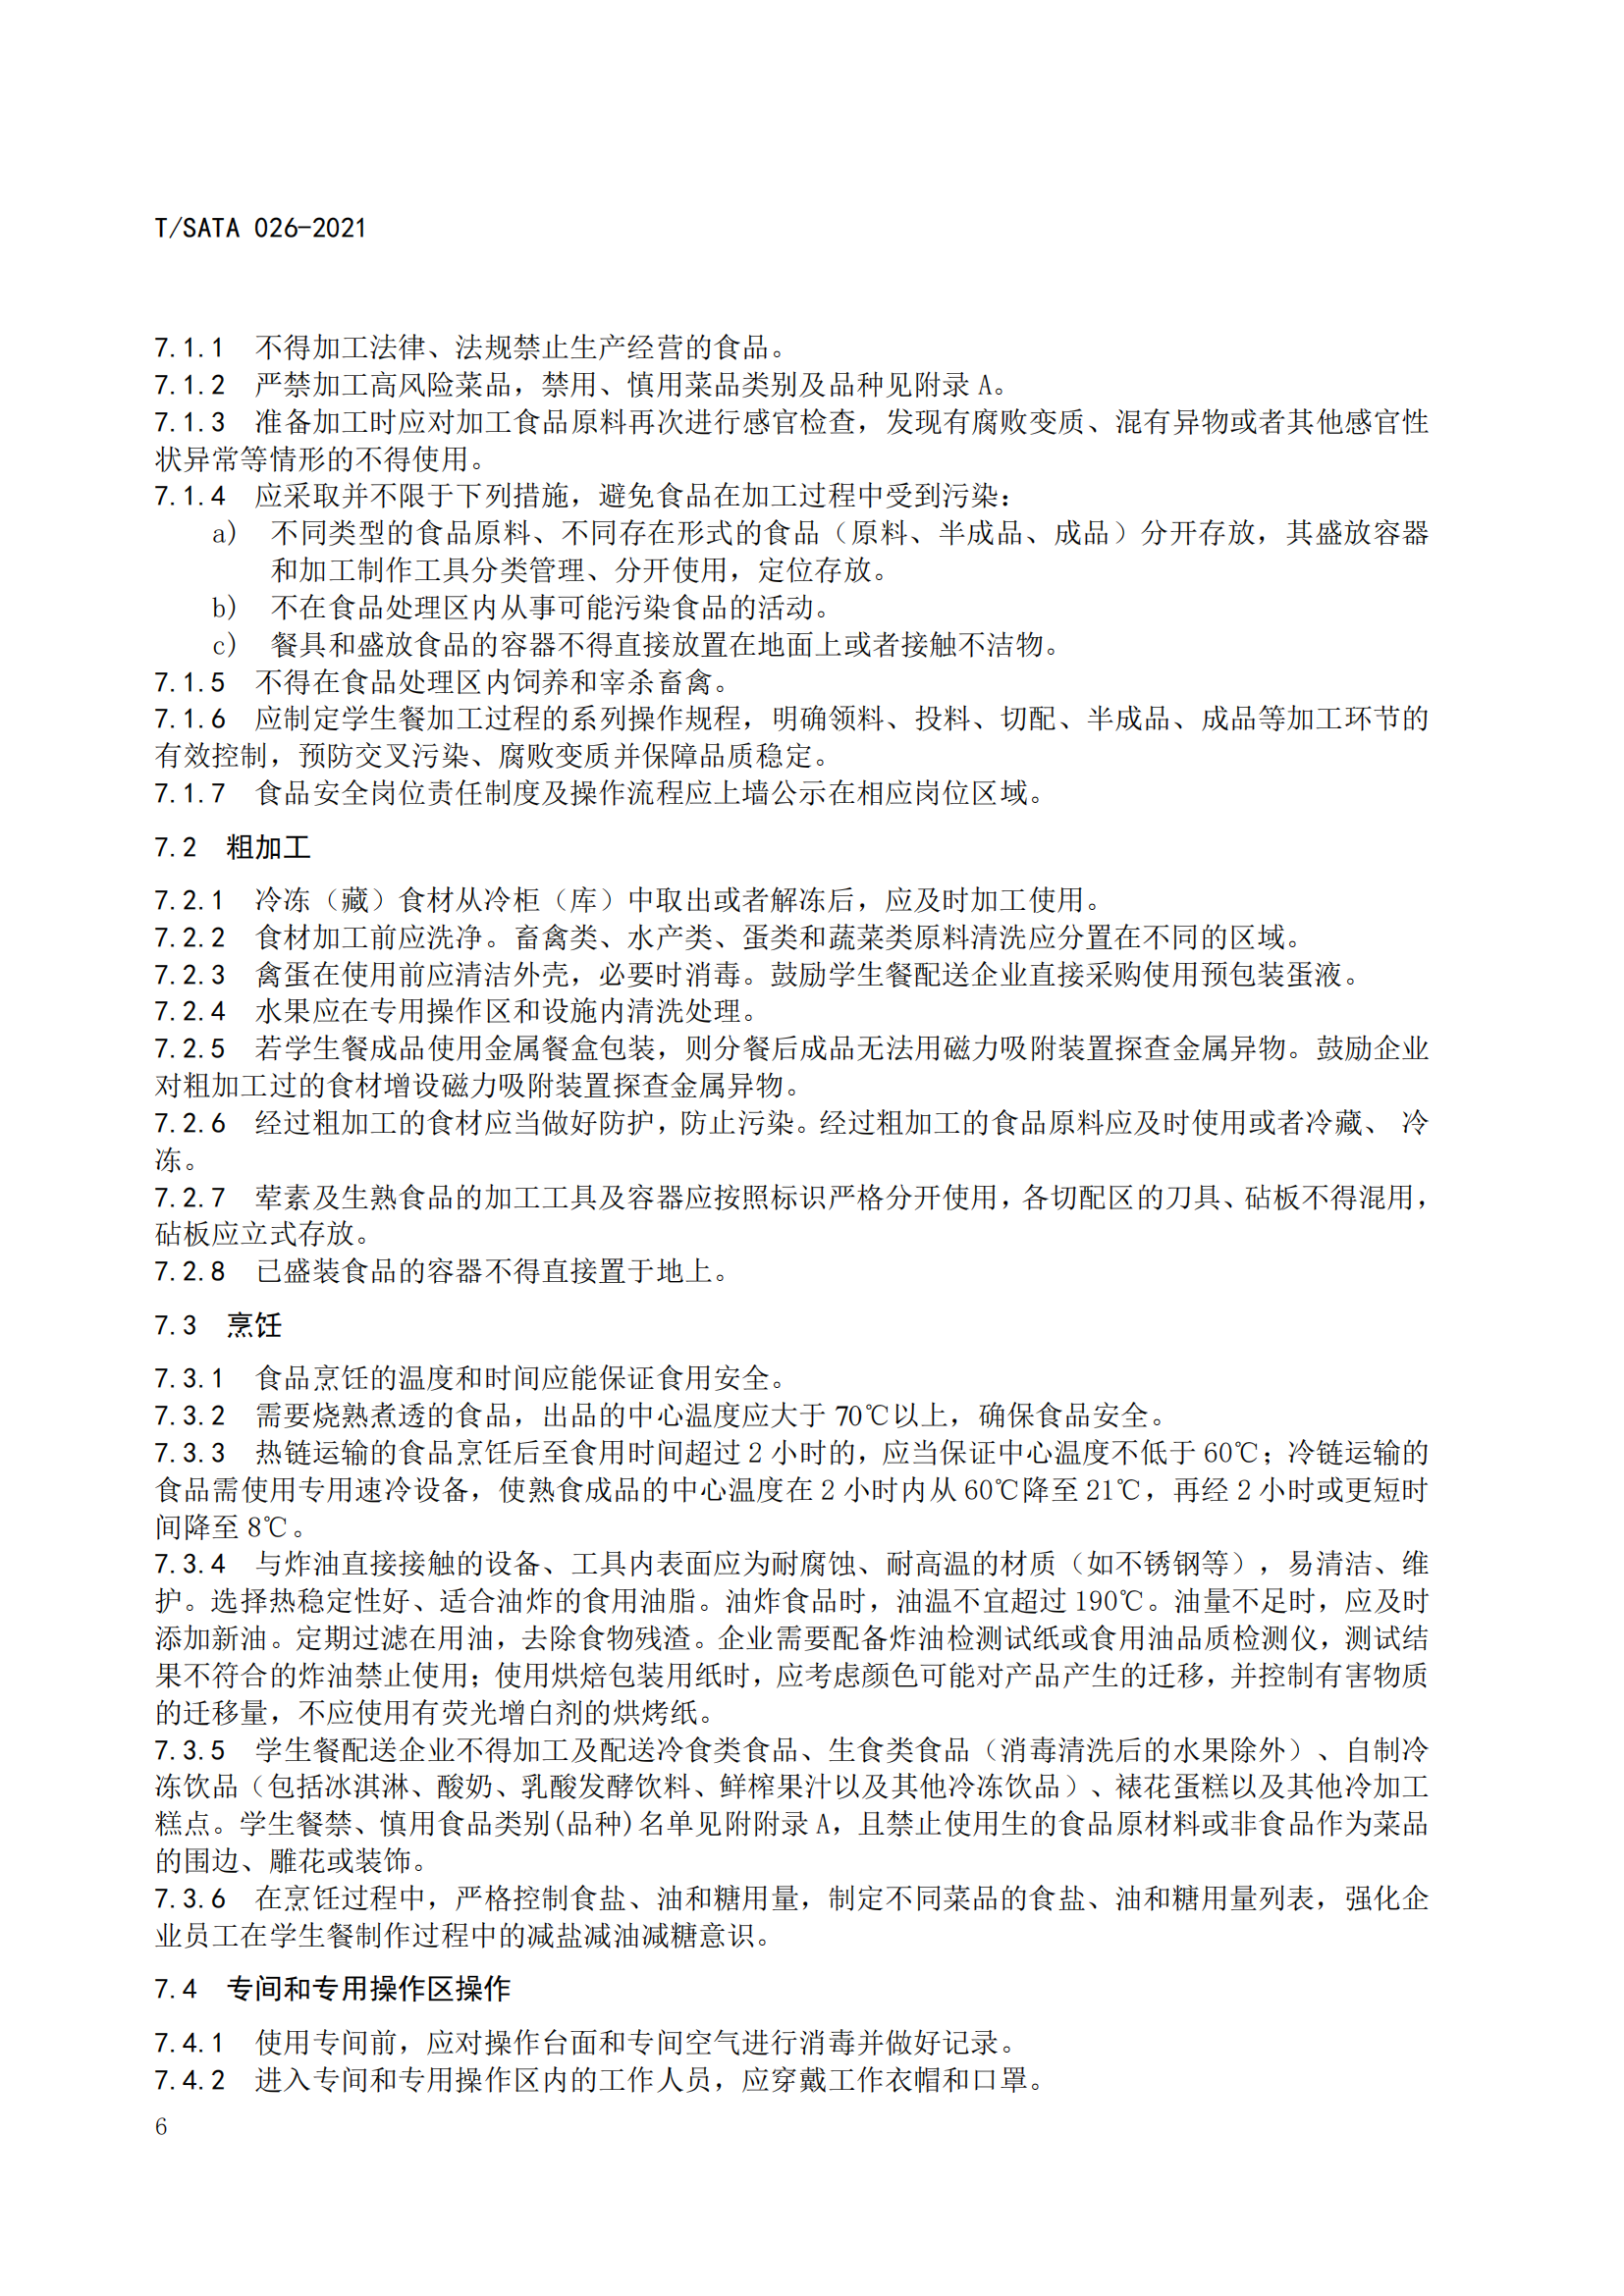 《深圳市校外集中配送学生餐操作规范》团体标准（发布版）2021.11.18终_08.png